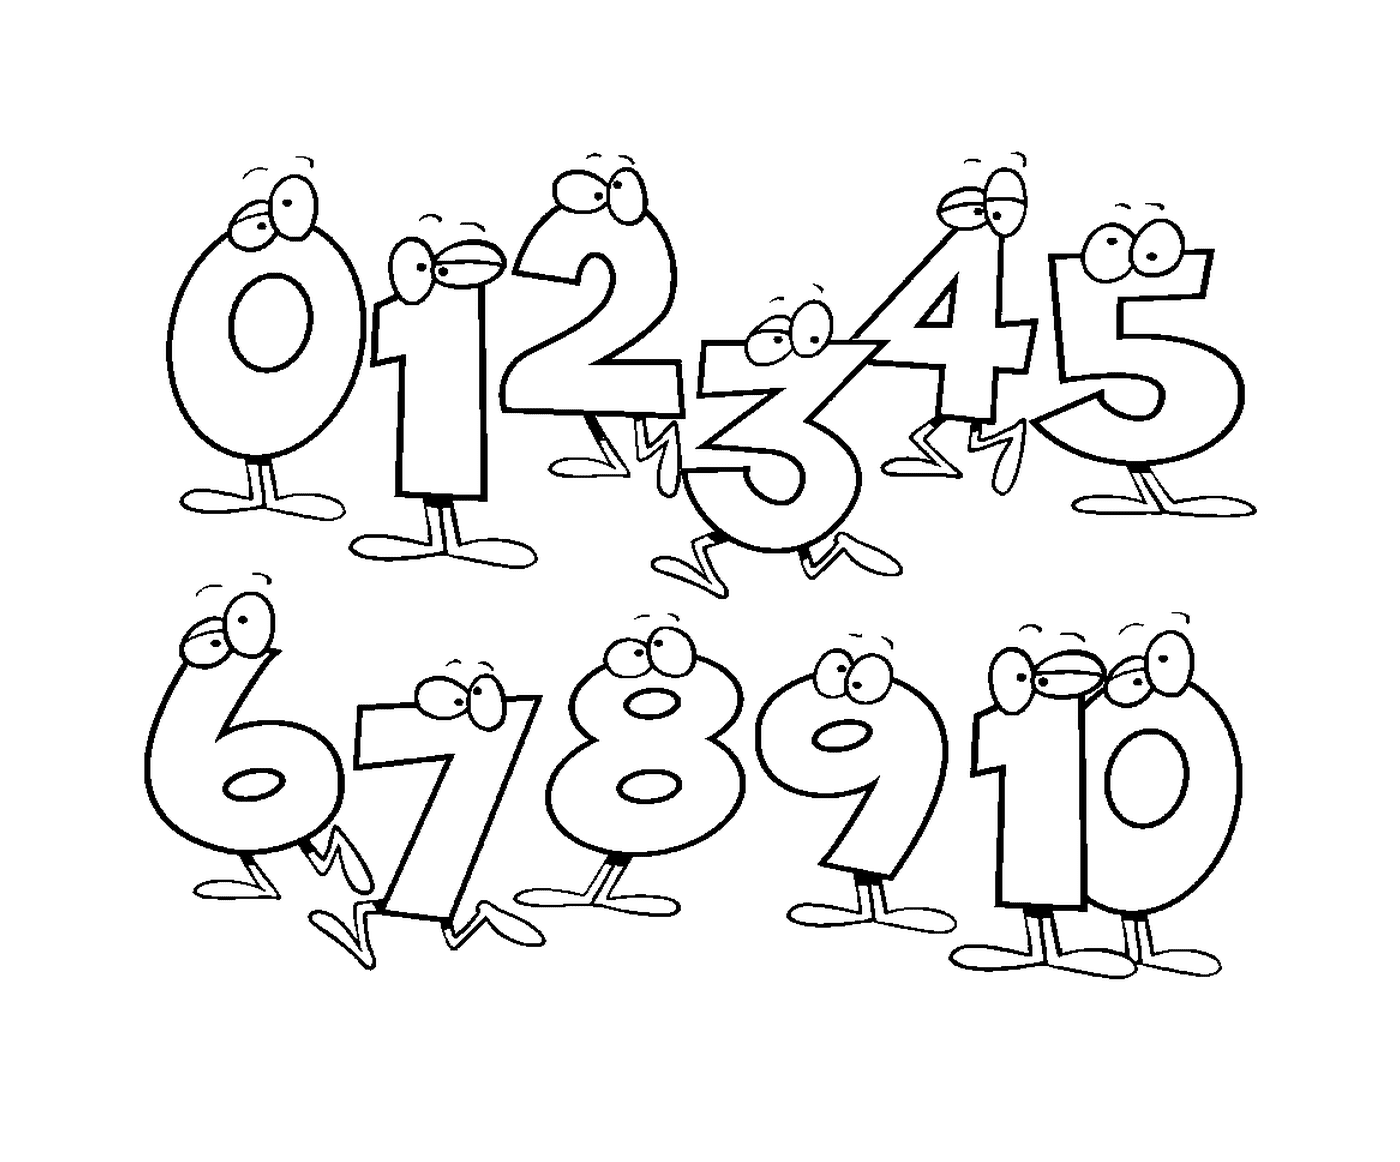  Conjunto de números desenhados caricaturalmente de zero a dez 